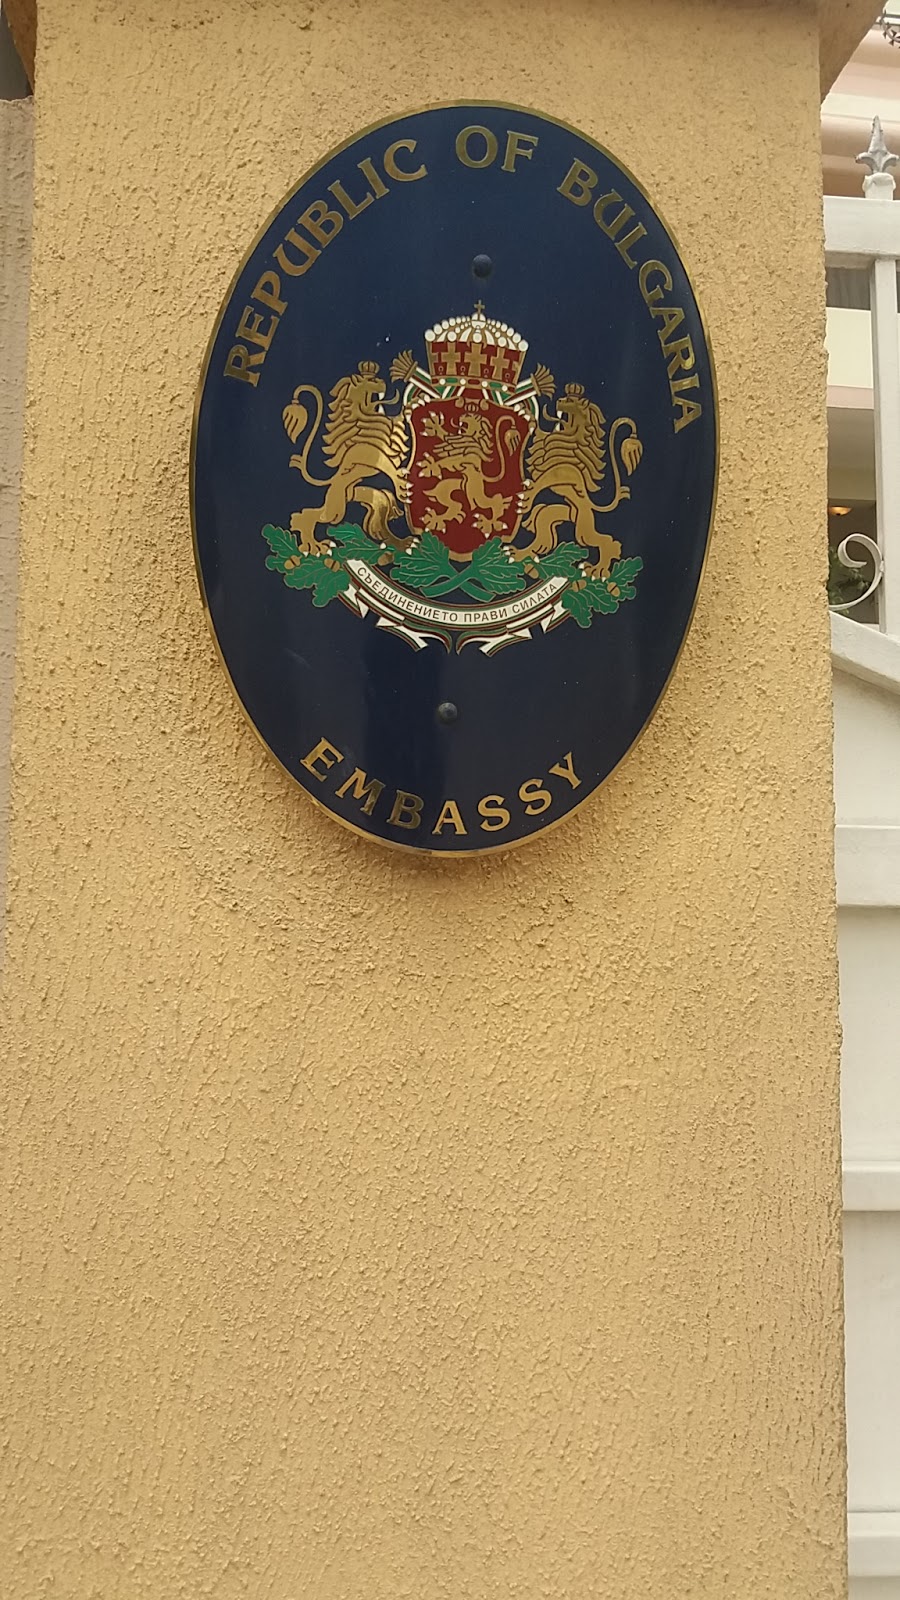 Bulgaria Embassy